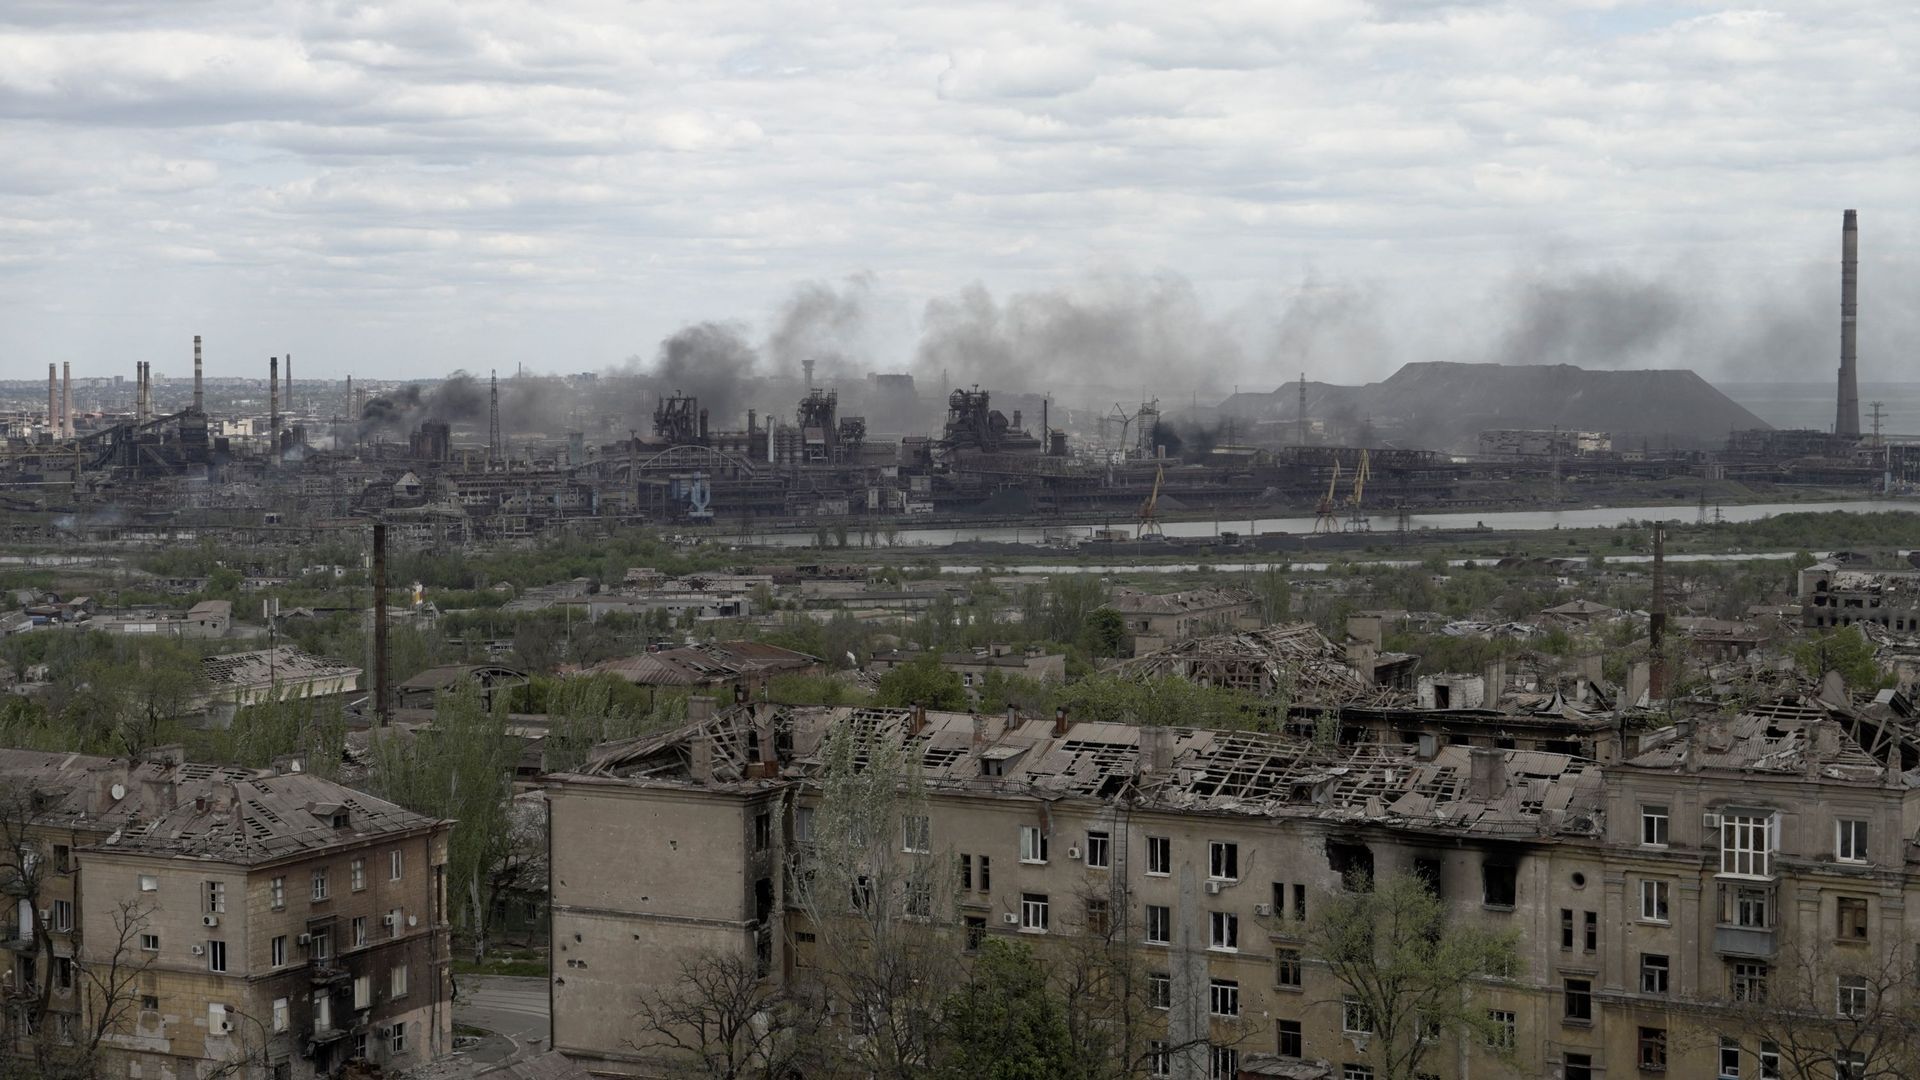 Une vue de la ville de Mariupol et de l’usine sidérurgique Azovstal, le 10 mai 2022, dans le cadre de l’action militaire russe en Ukraine.